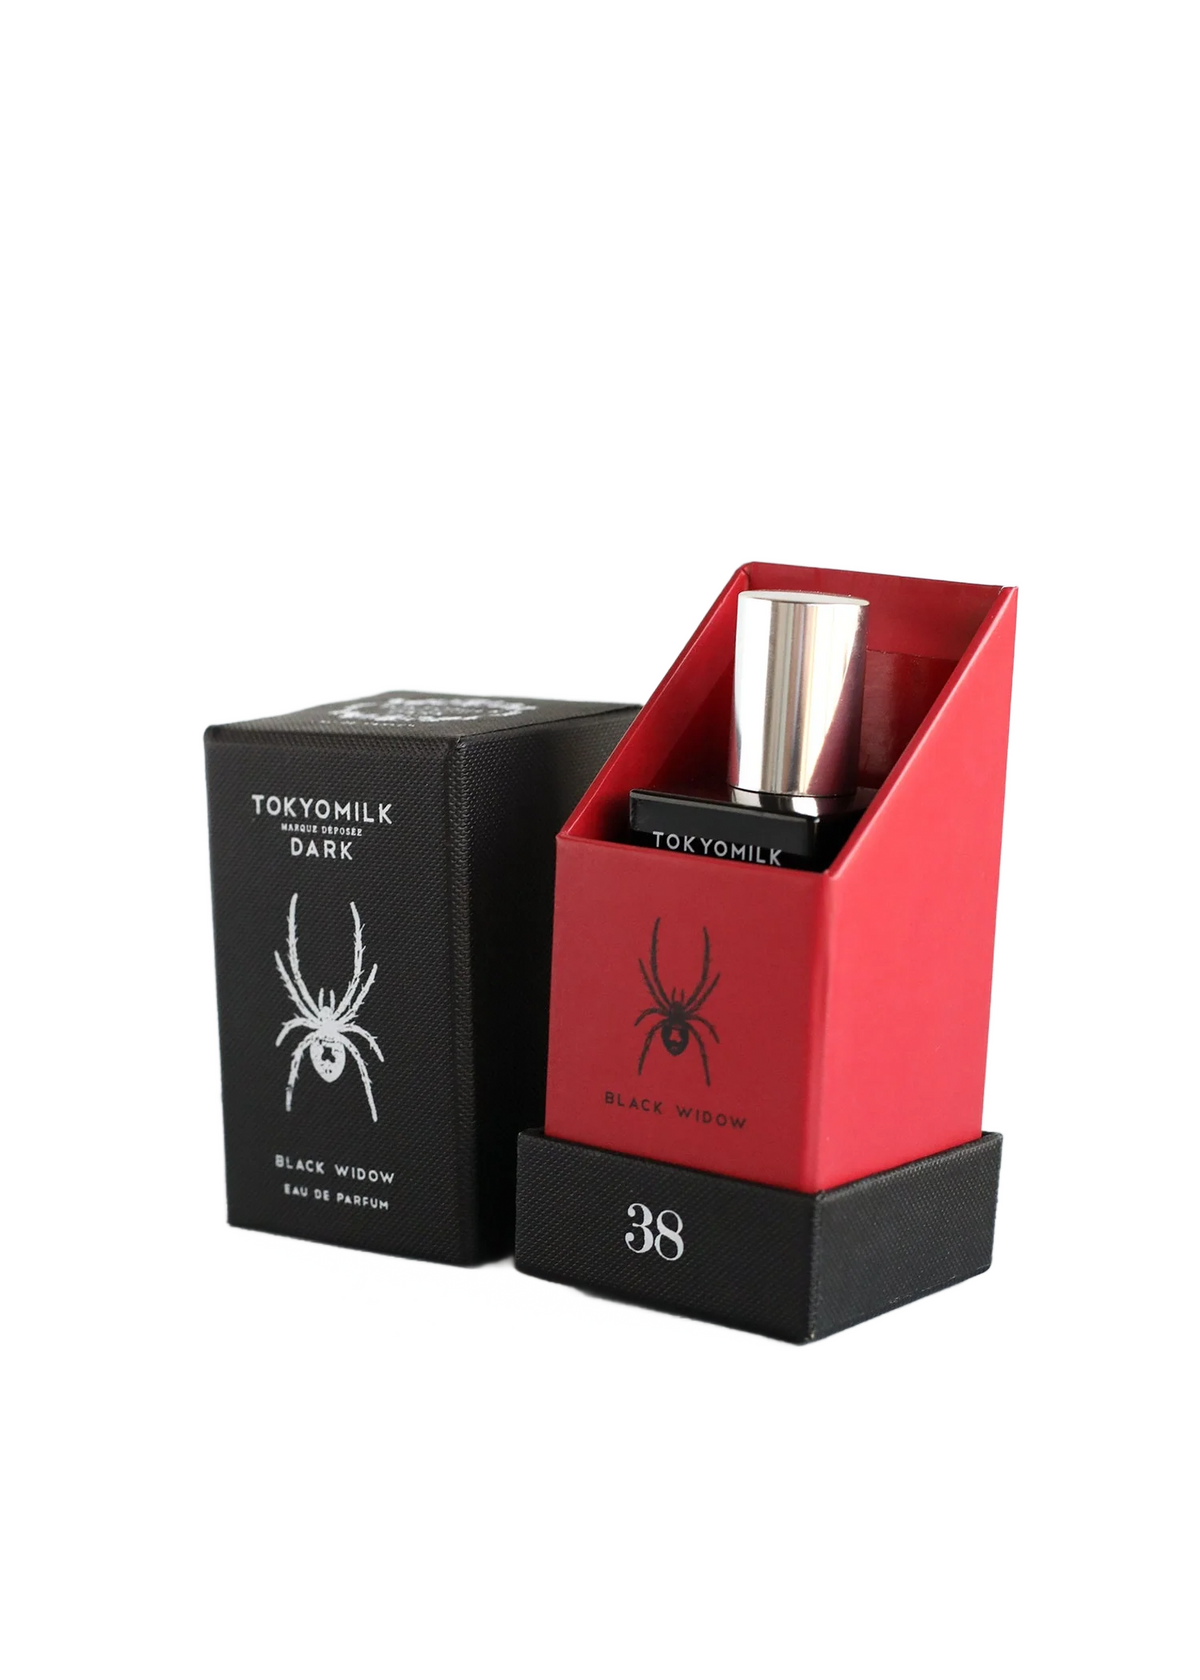 A bottle of Margot Elena TokyoMilk Dark Black Widow No. 38 Eau de Parfum in a red holder beside its black box, featuring spider graphics.